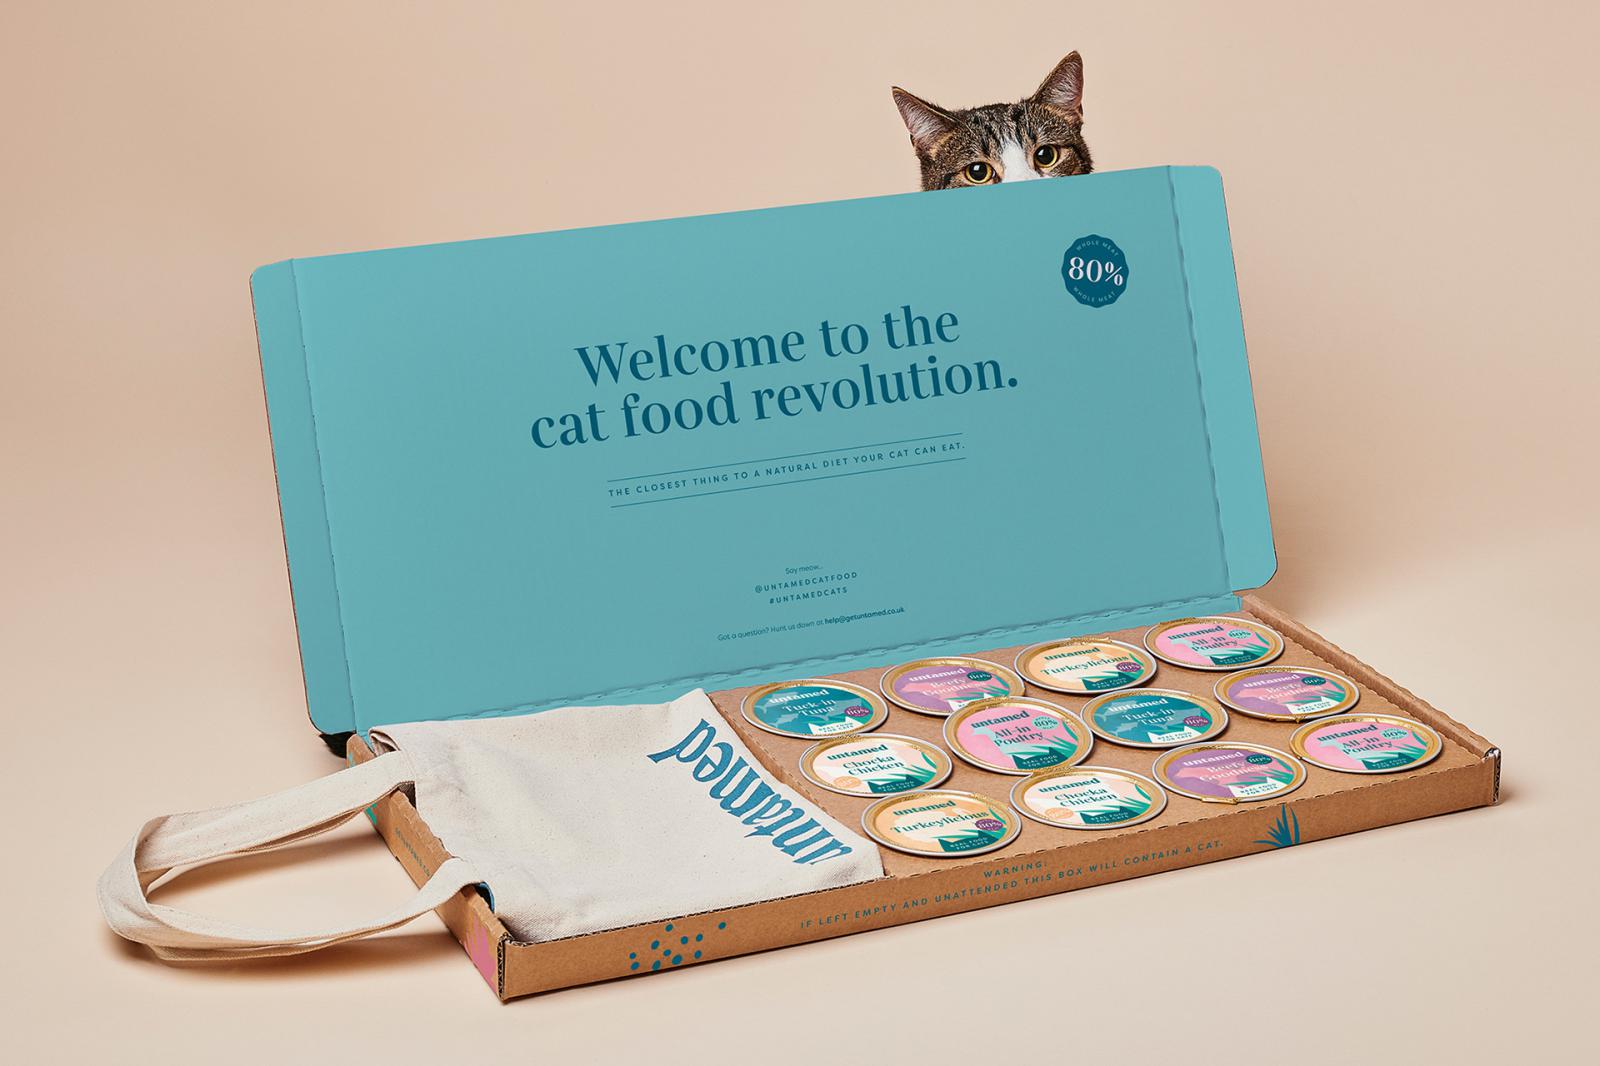 猫粮包装设计 猫粮包装设计哪家好 上海猫粮包装设计公司 宠物食品包装设计公司 第2张